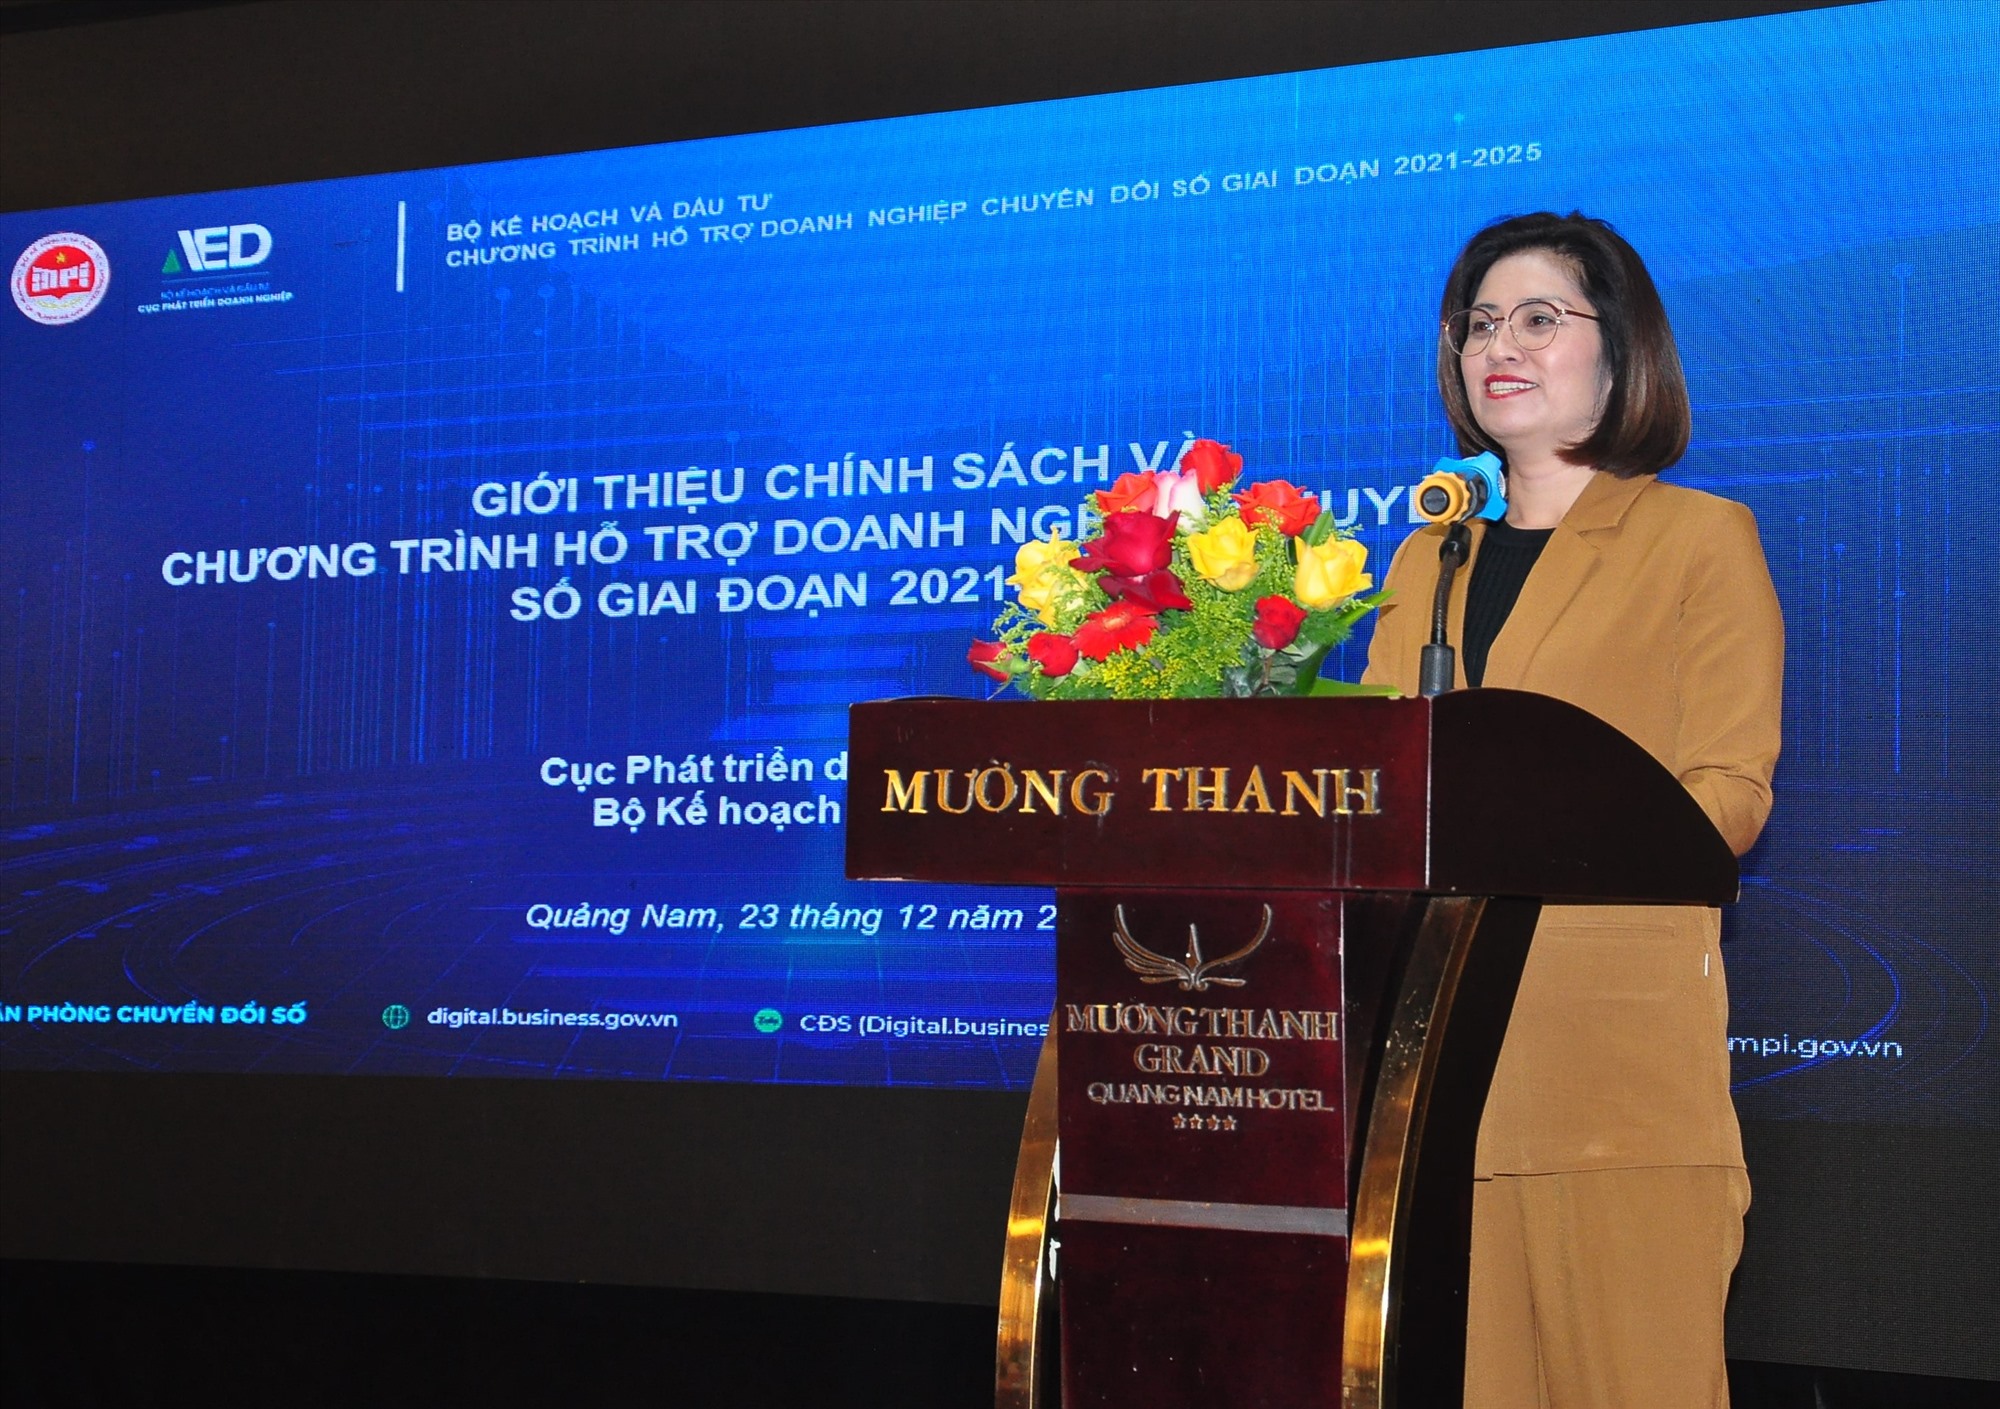 Bà Trịnh Thị Hương – Phó Cục trưởng Cục phát triển doanh nghiệp, Bộ Kế hoạch và đầu tư phát biểu tại diễn đàn